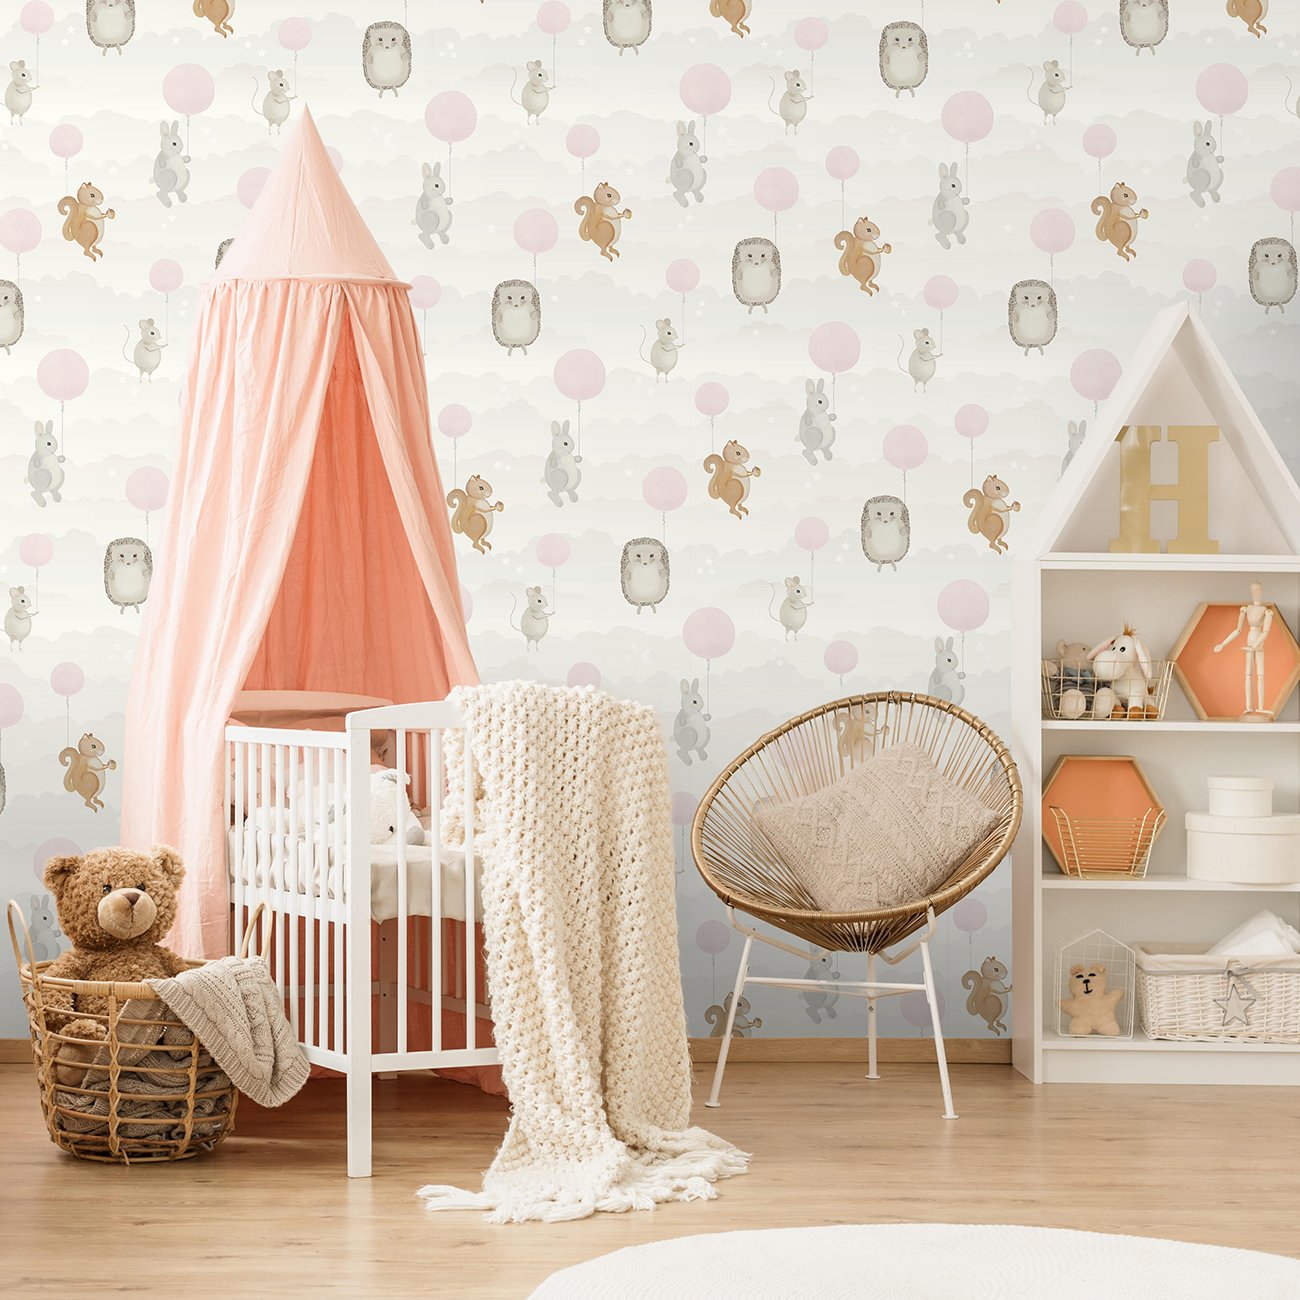 保育園の壁紙,製品,家具,ルーム,ピンク,幼児ベッド